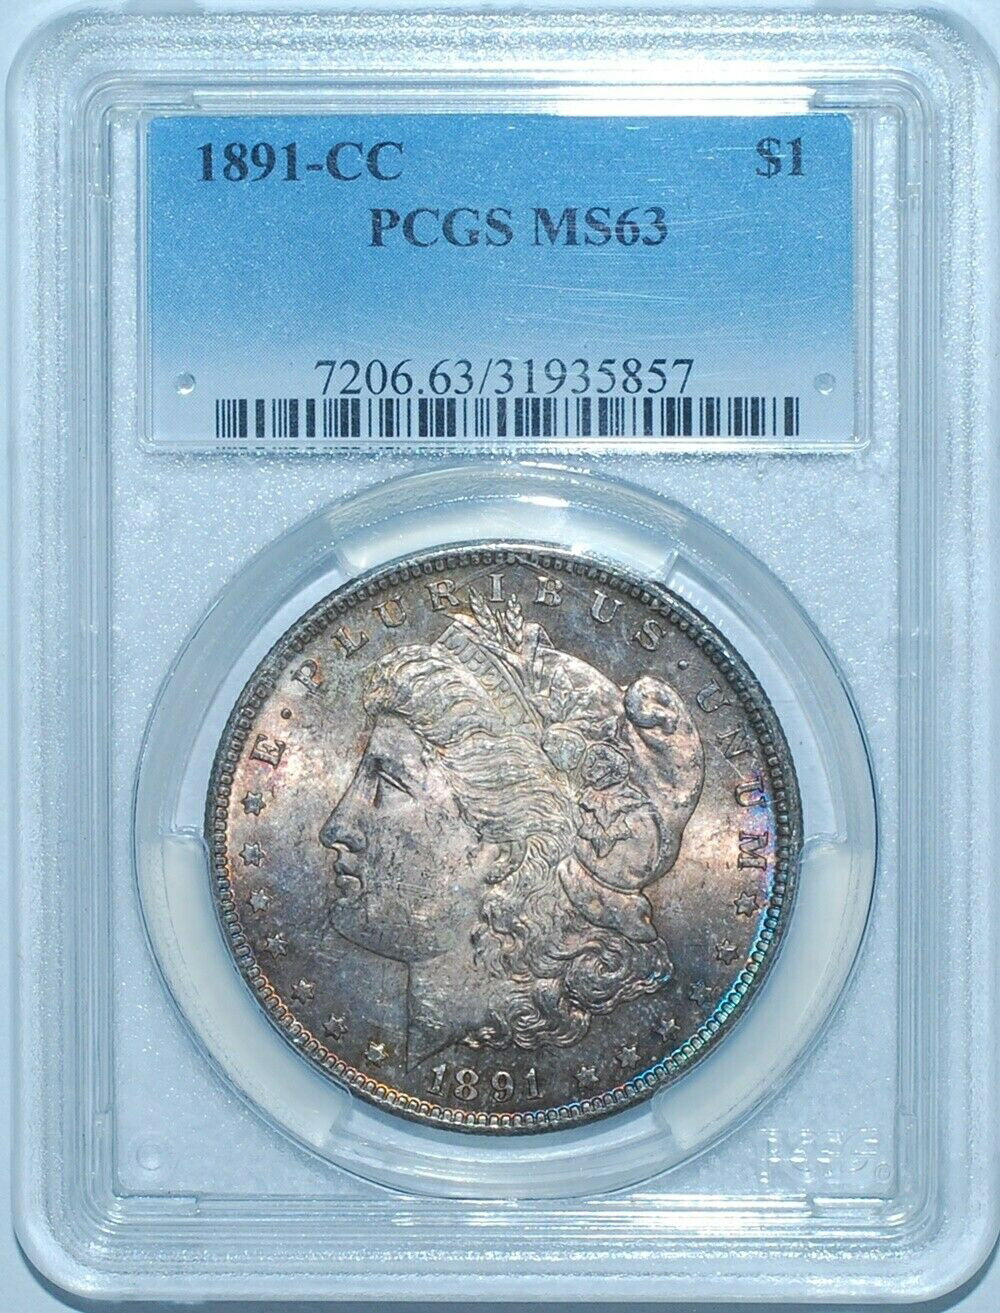  アンティークコイン 銀貨 1891 CC PCGS MS63 VAM-3 Spitting Eagle Carson City Morgan Silver Dollar  #sot-wr-8790-237